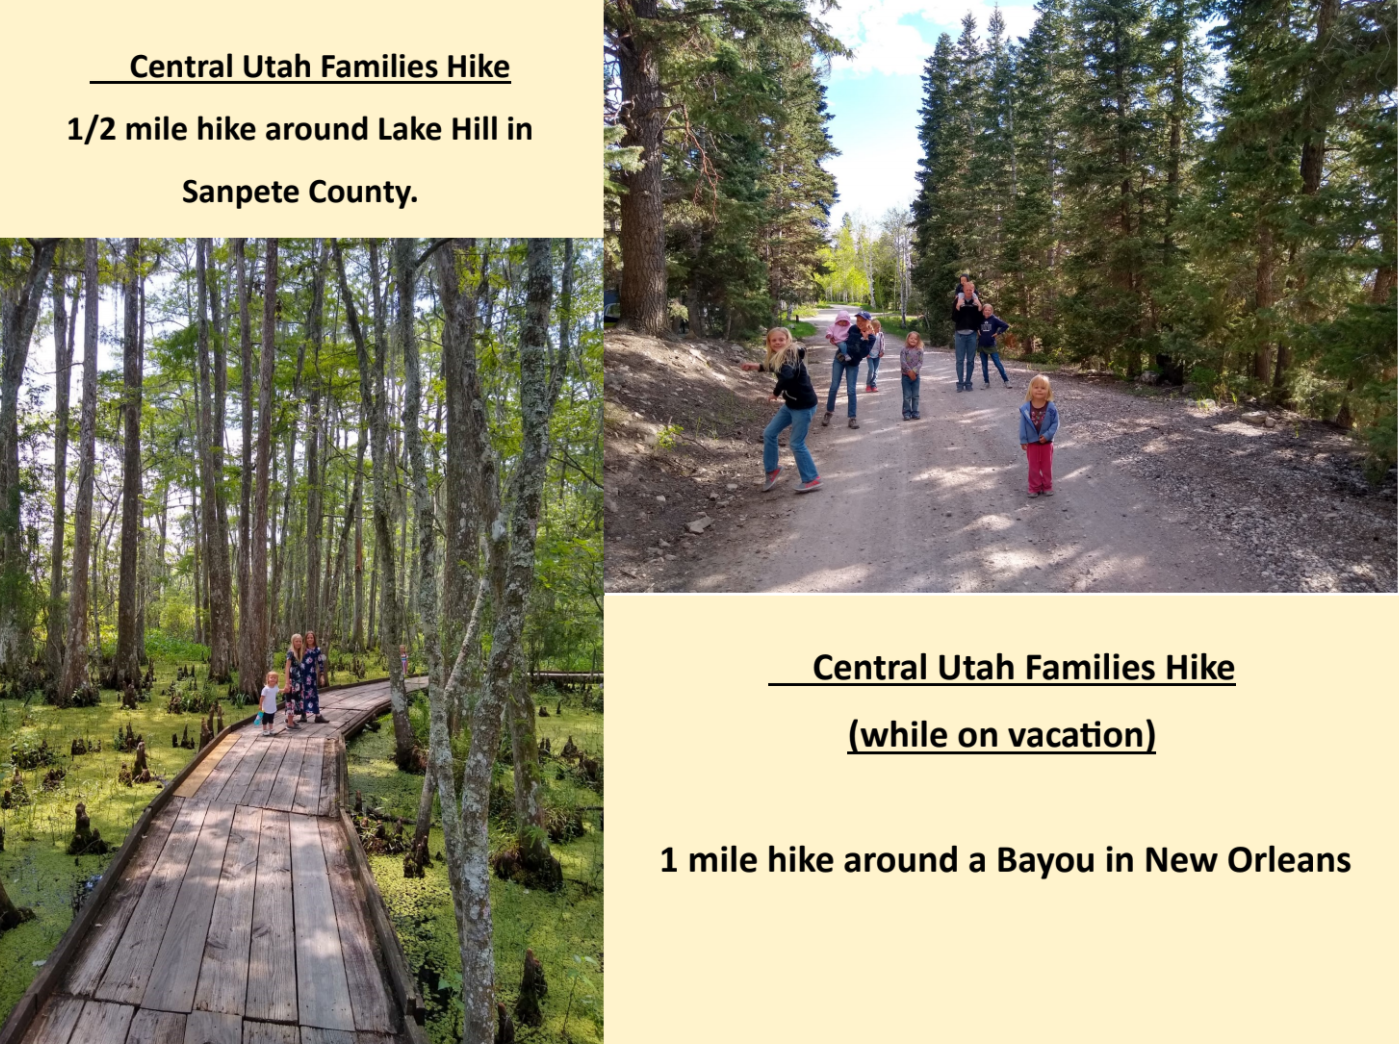 Central Utah Families Hike